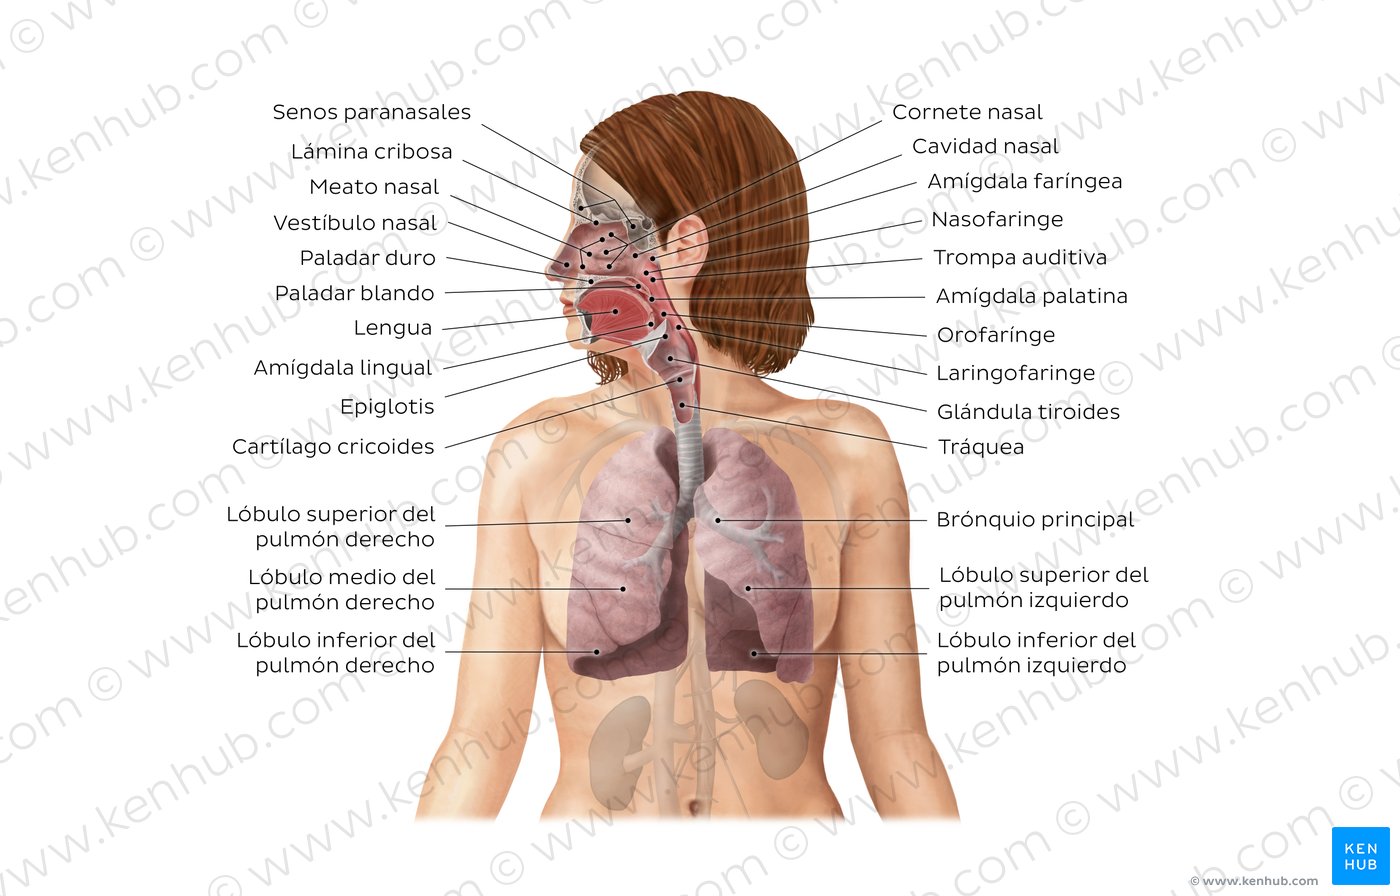 Sistema respiratorio: Anatomía y funciones | Kenhub